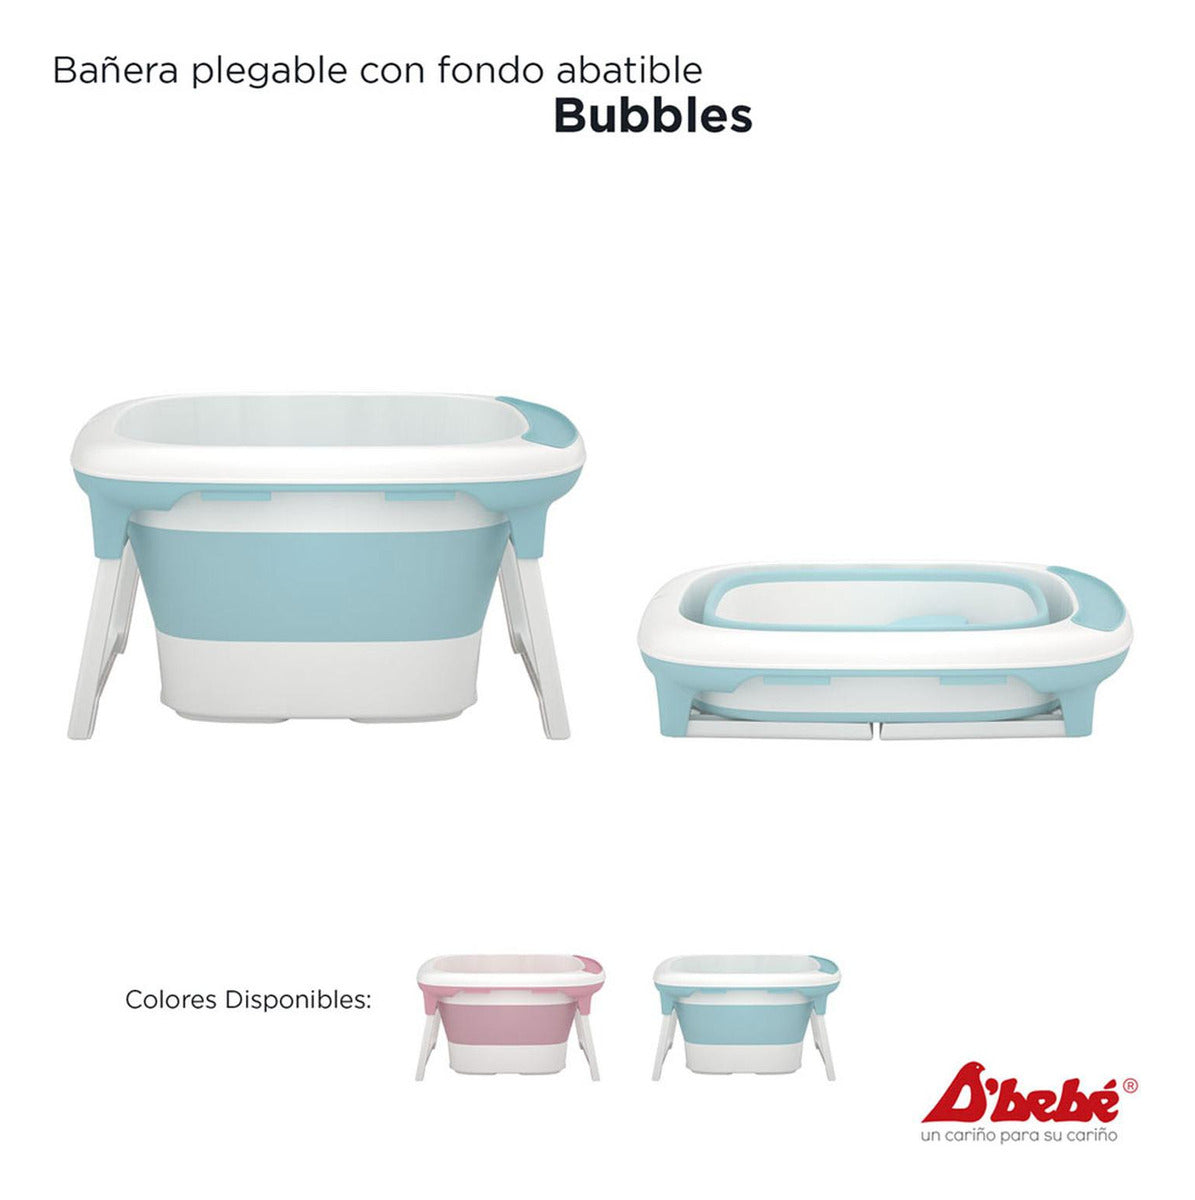 Bañera Pegable D'bebé Bubbles Unisex de 0 a 6 años